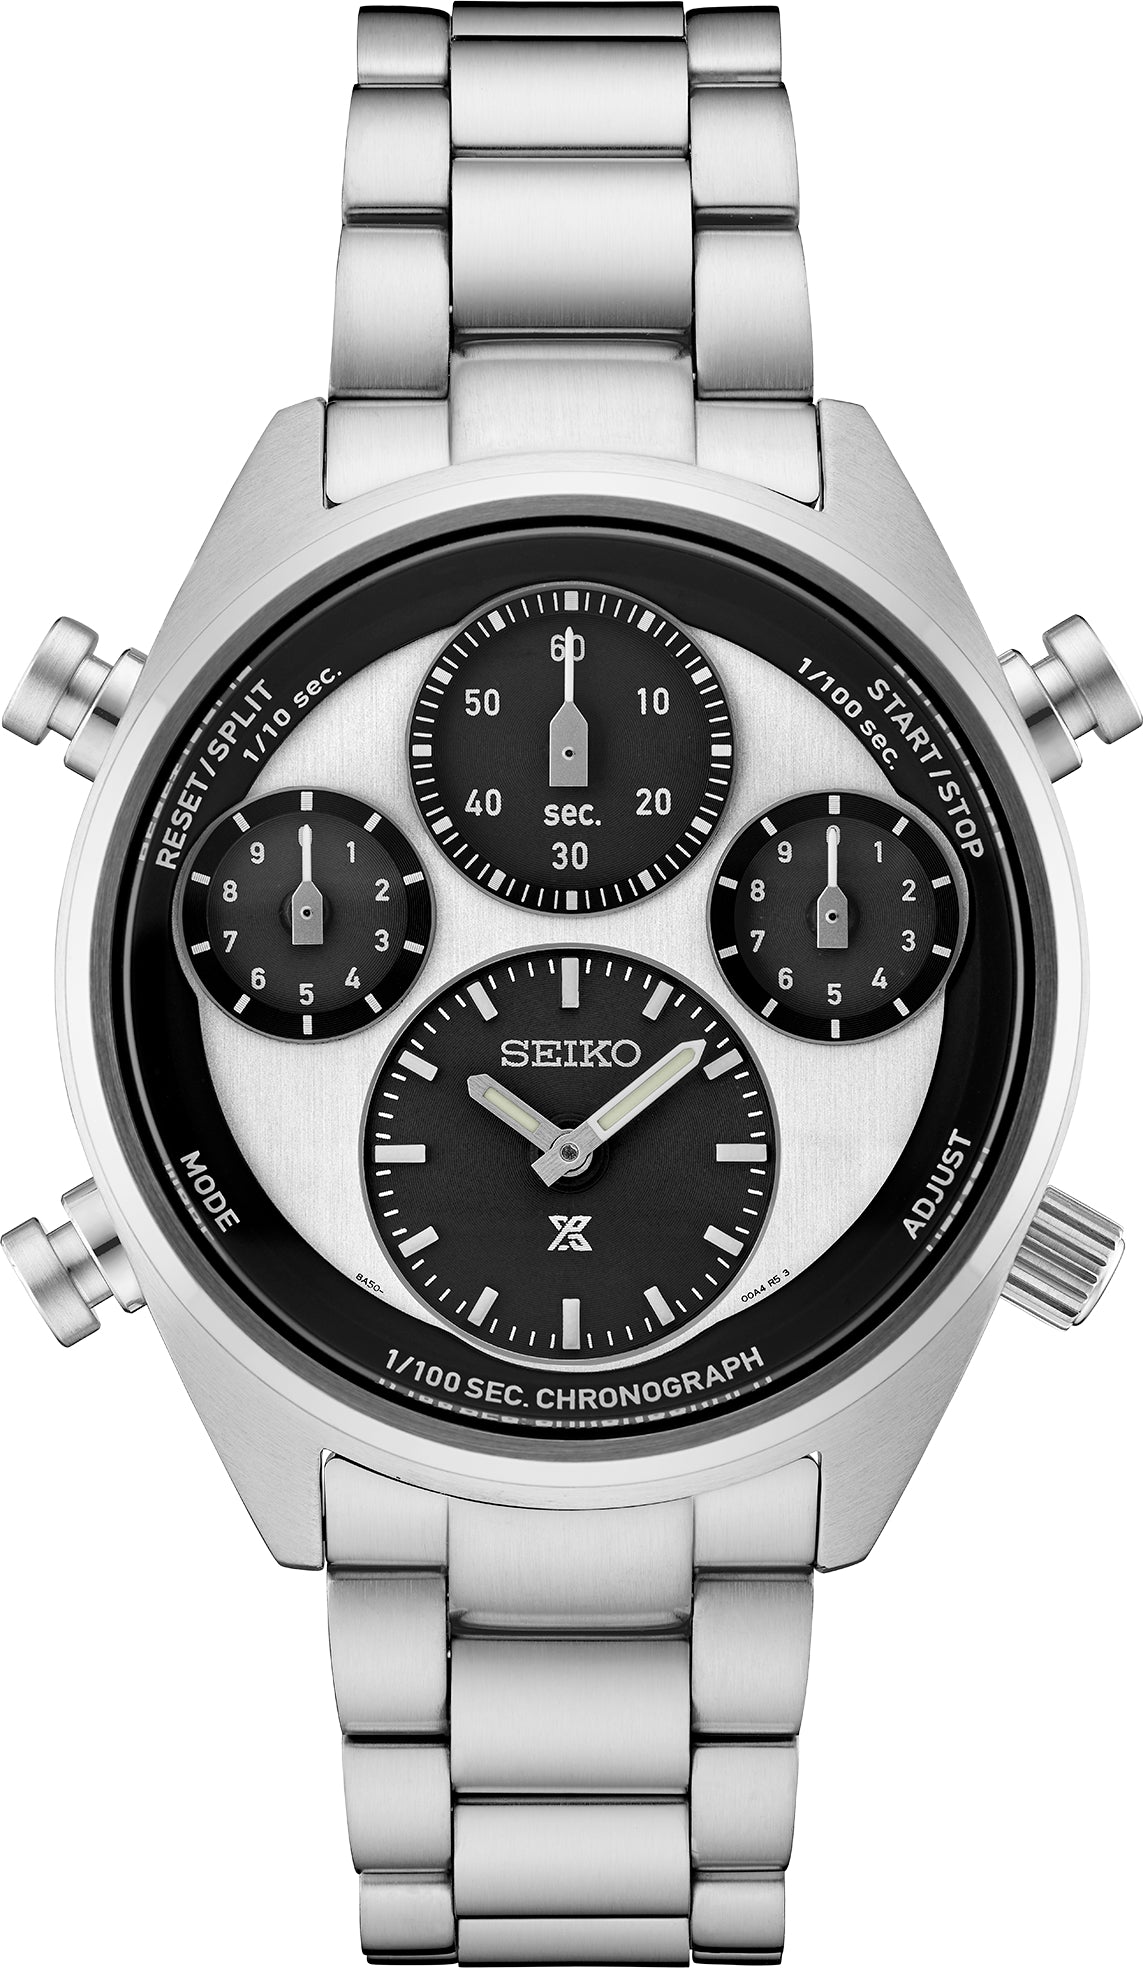 Gts Seiko SFJ001 Prospex Solar Chronograph Black and White Dial Watch